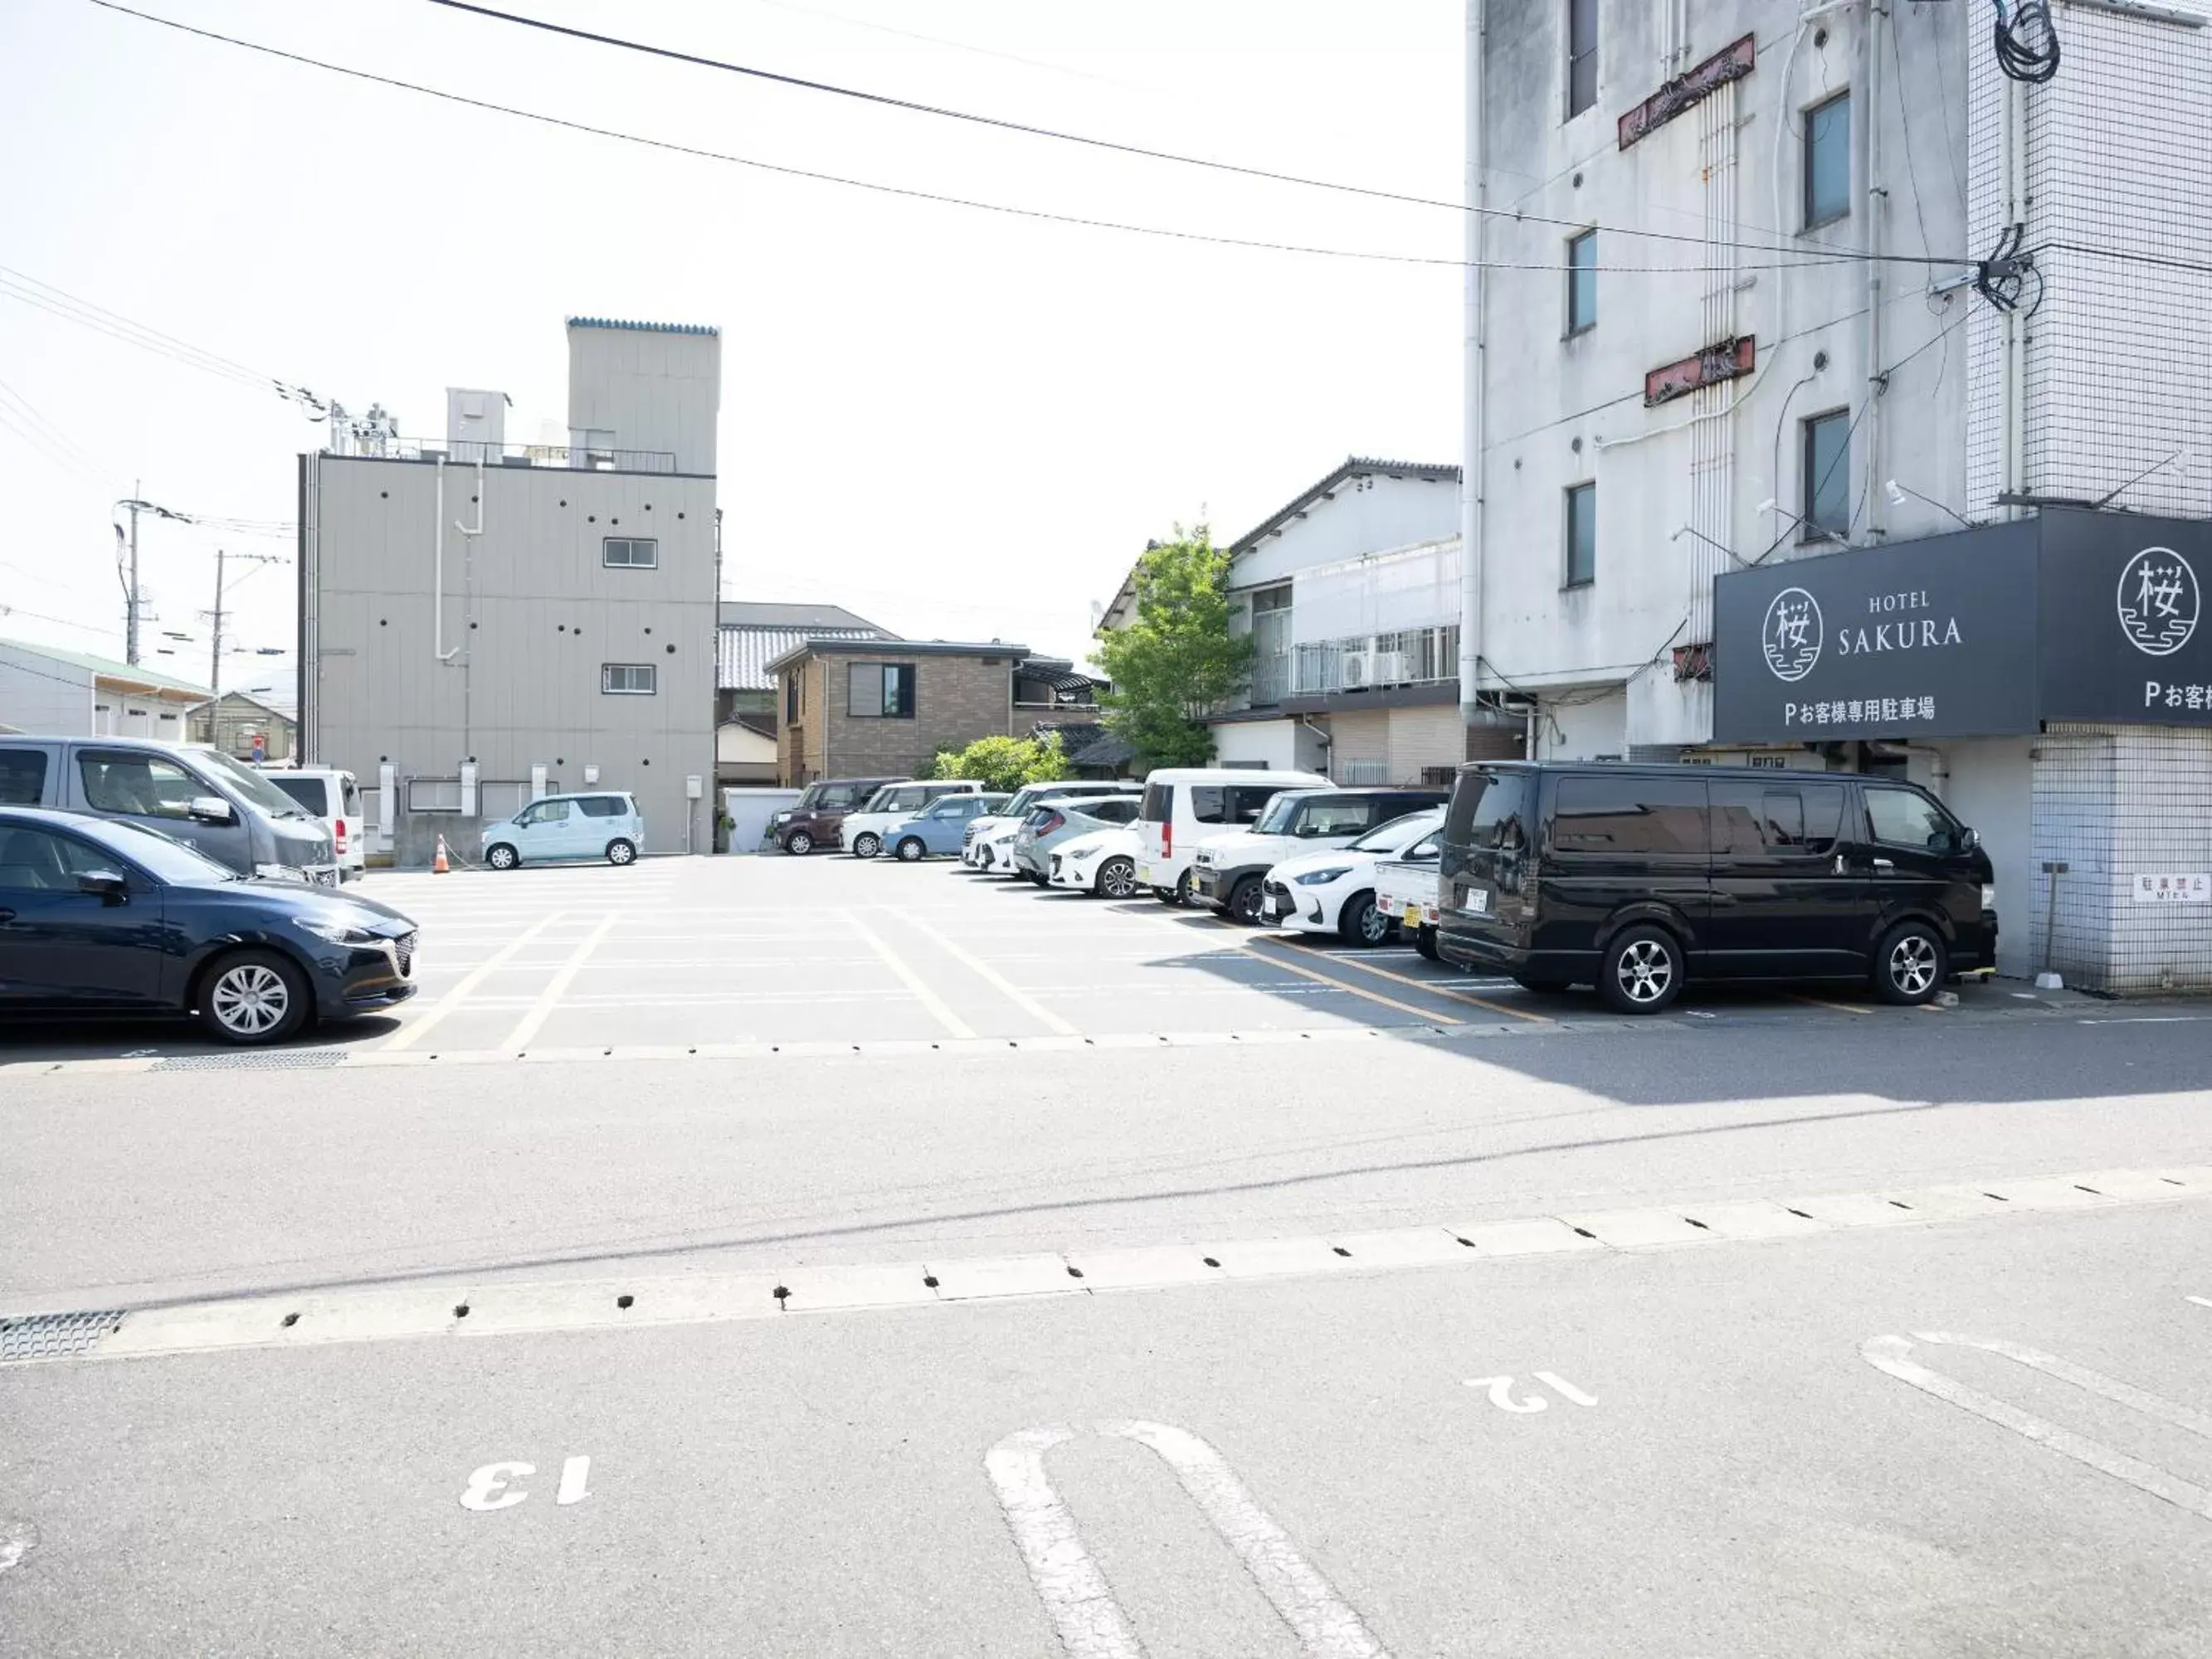 Parking, Neighborhood in Hotel Sakura Ureshino